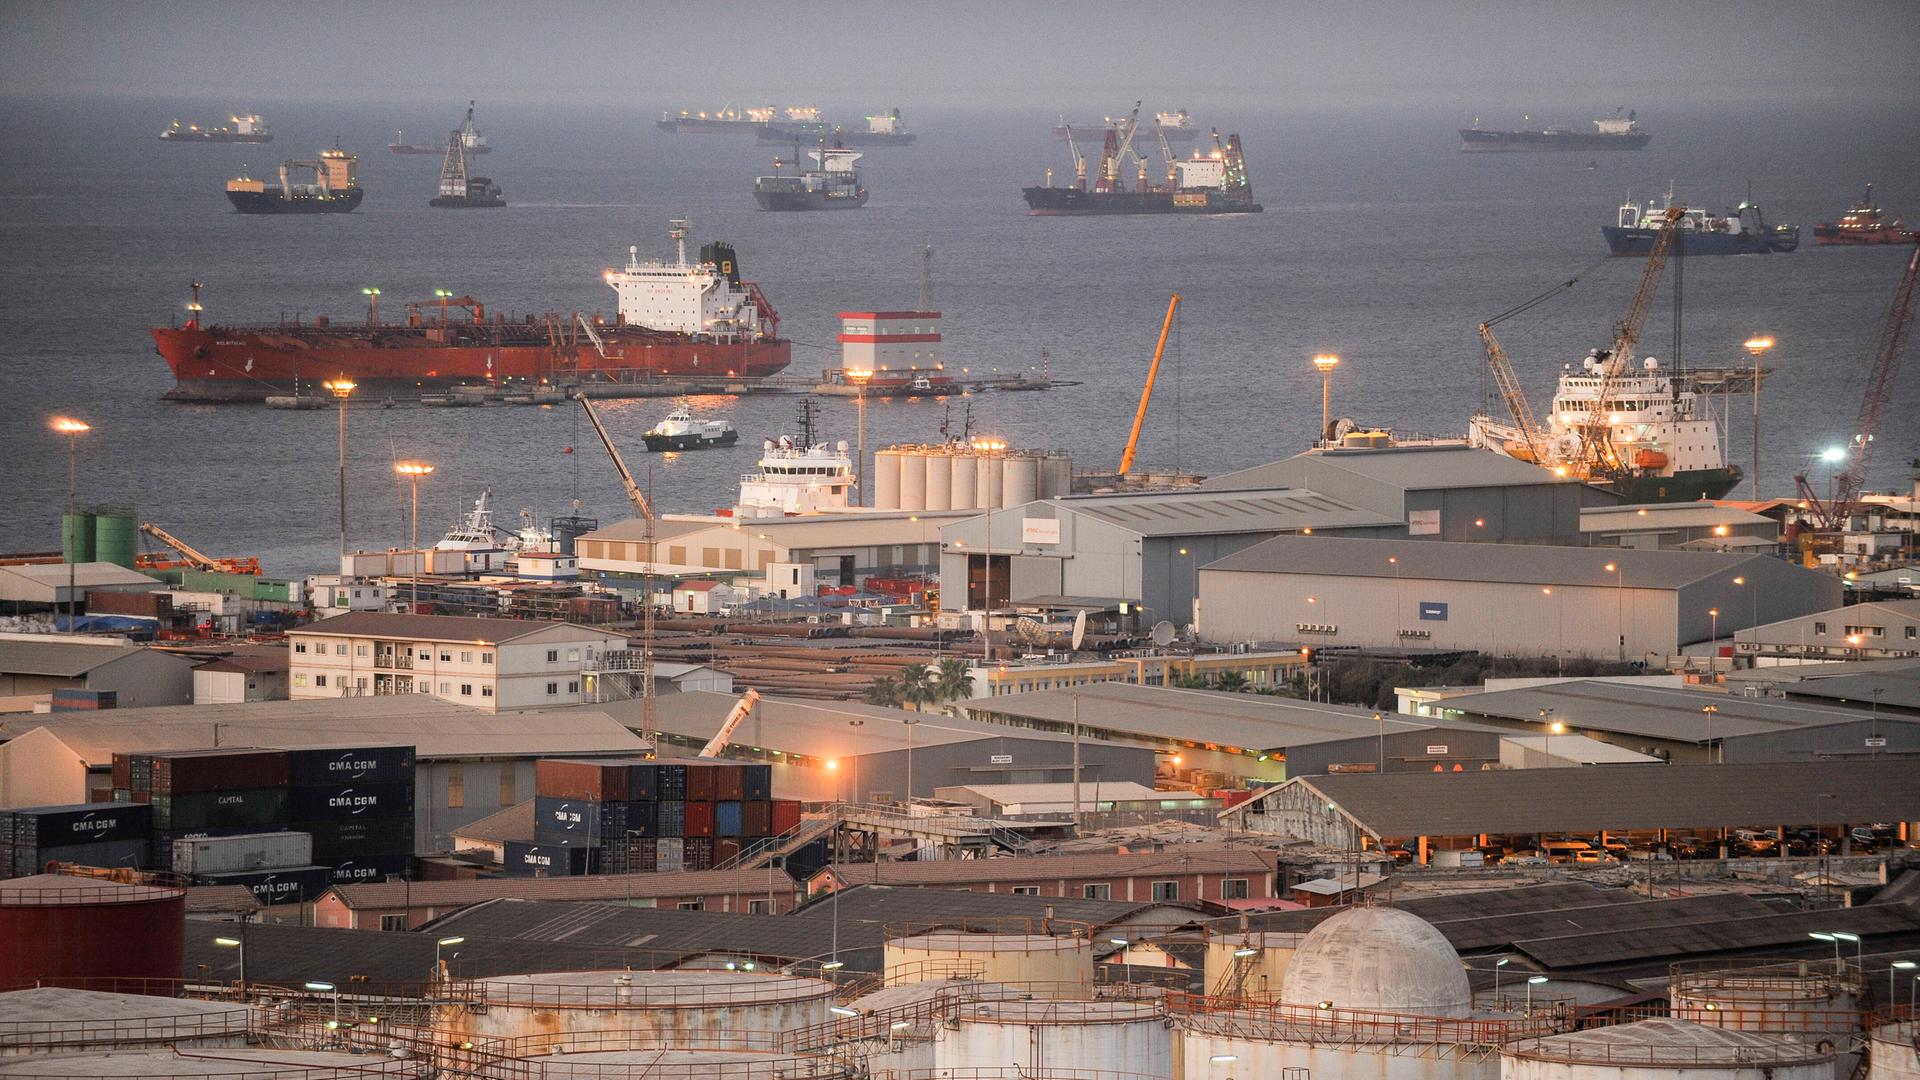 Öltanker liegen in Angola vor Anker. Im Vordergrund sind Bauten des nationalen Ölunternehmens des Landes zu sehen.